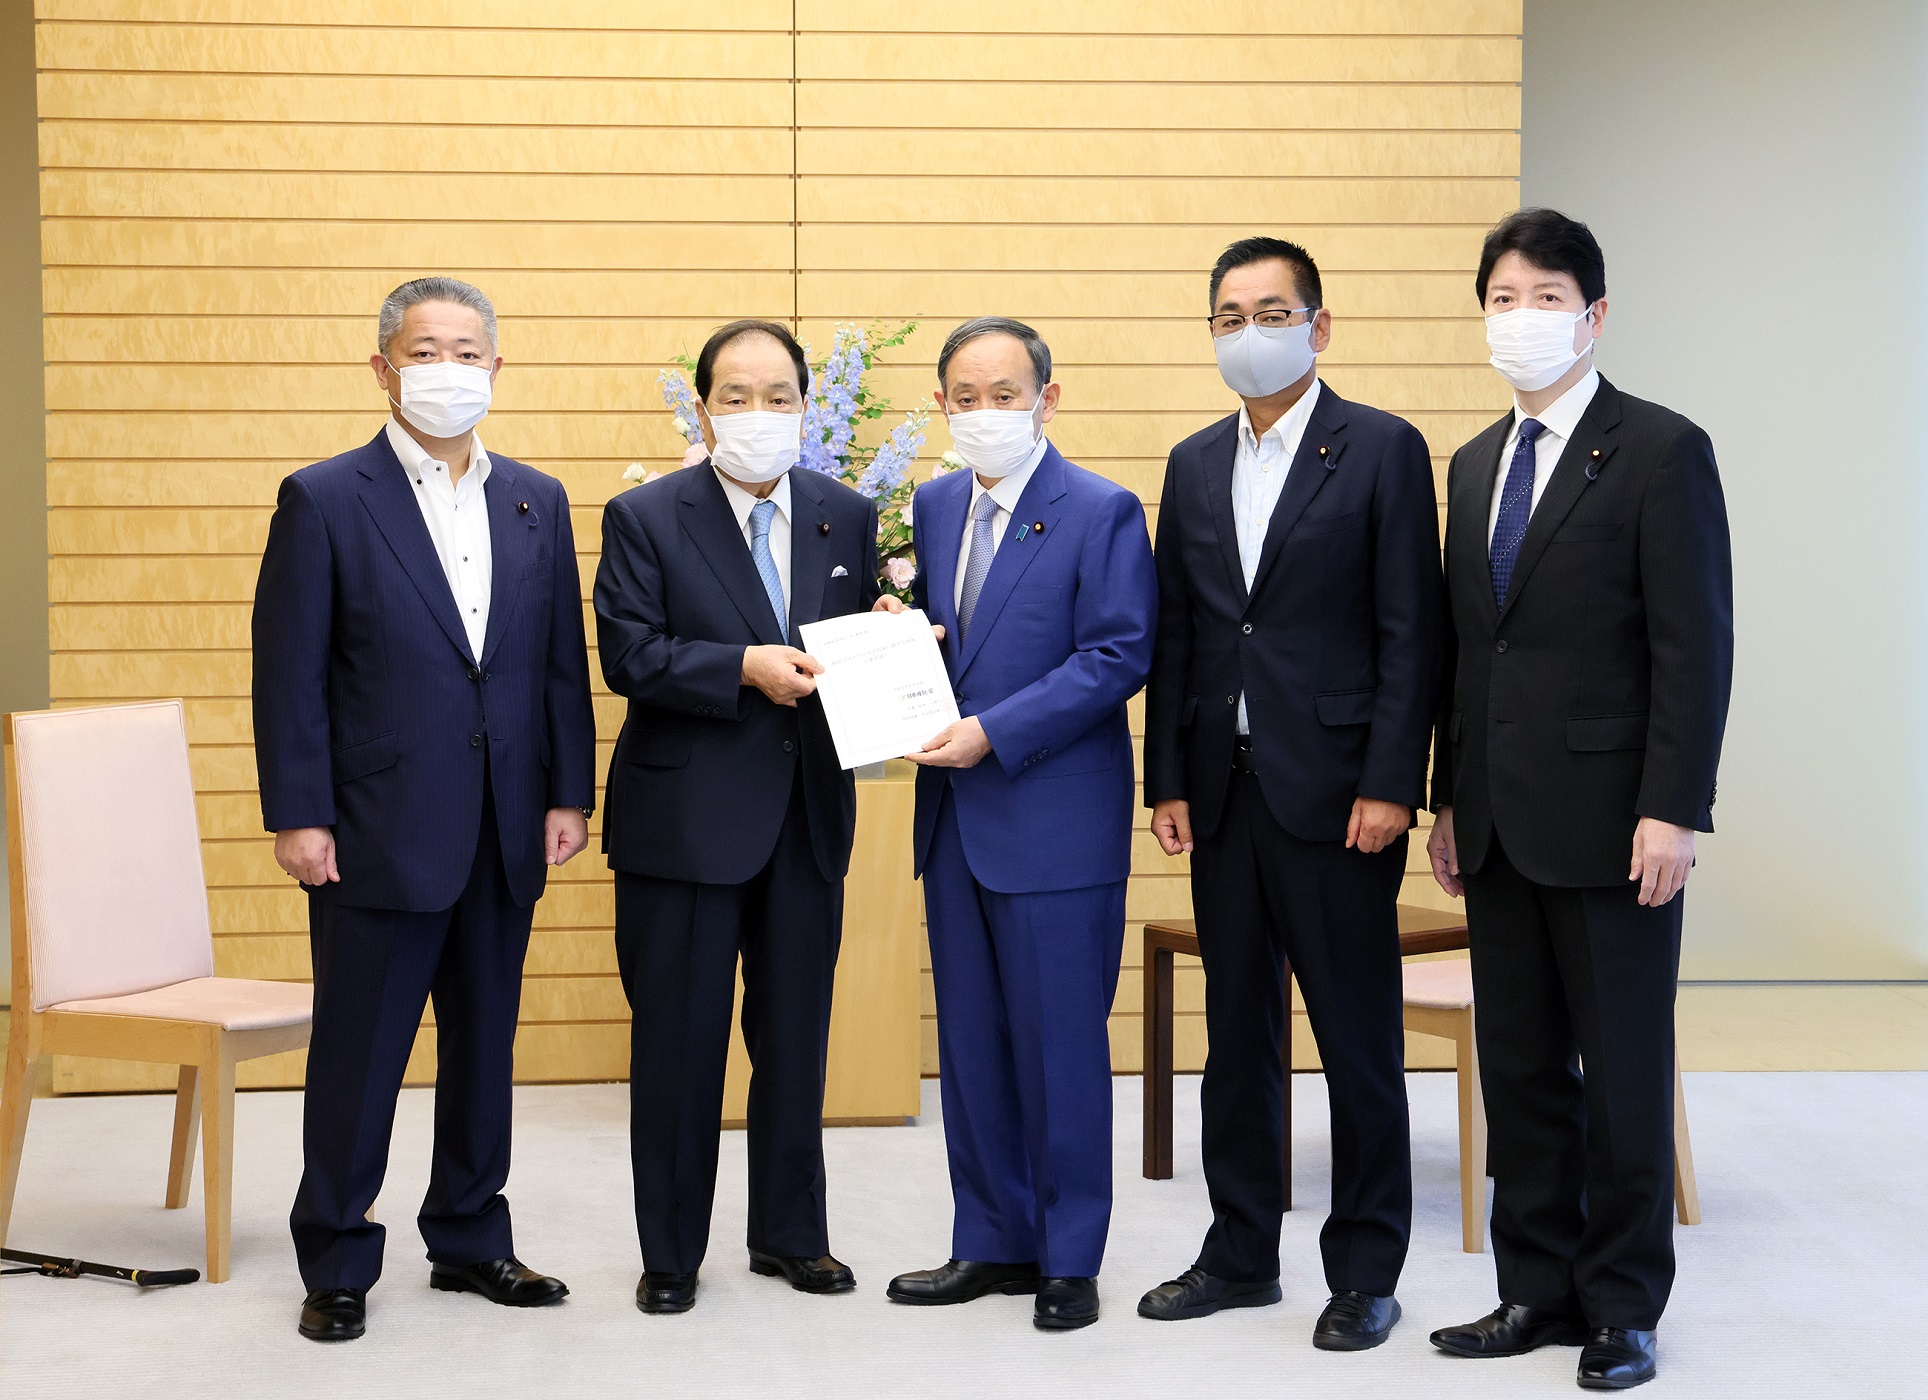 日本维新会有关新型冠状病毒感染症对策的建议